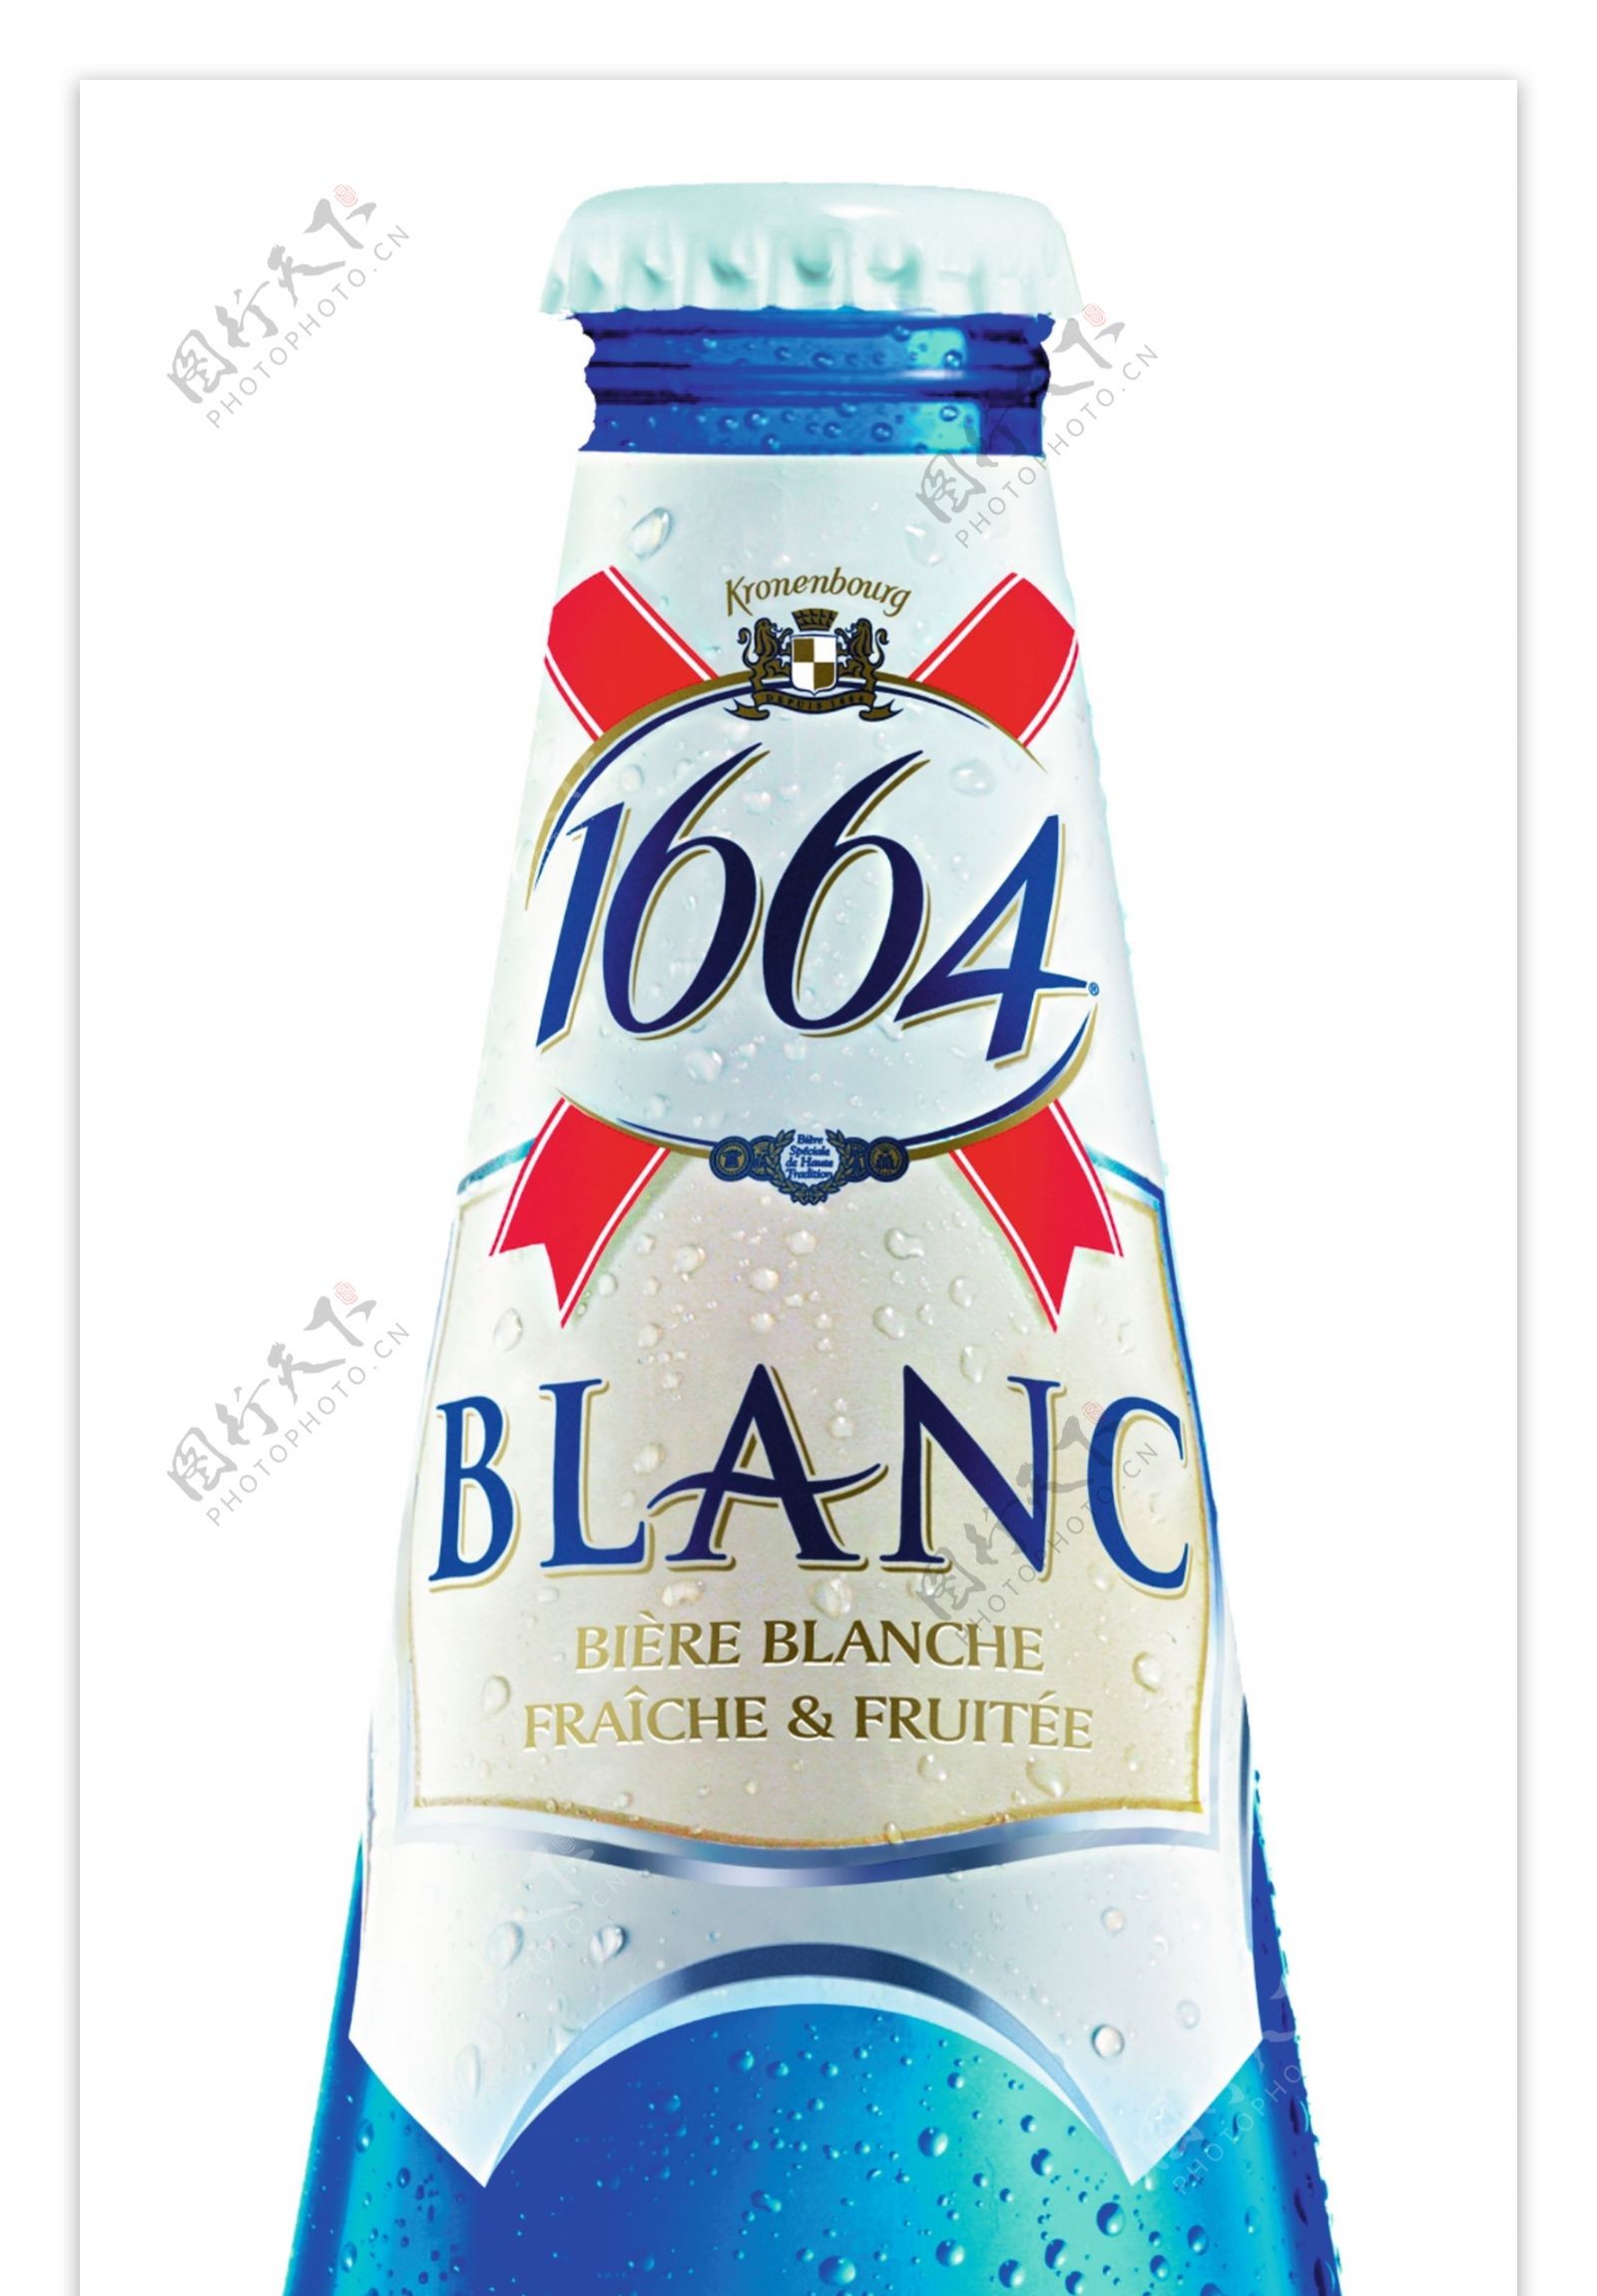 1664白啤